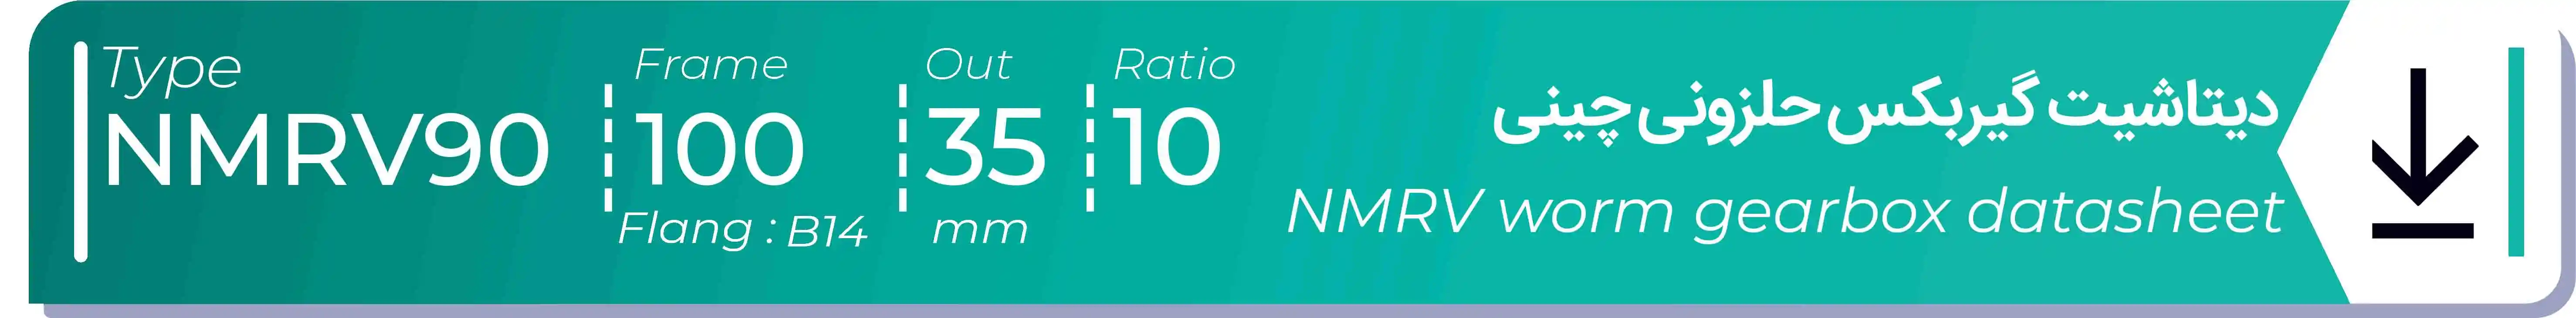  دیتاشیت و مشخصات فنی گیربکس حلزونی چینی   NMRV90  -  با خروجی 35- میلی متر و نسبت10 و فریم 100